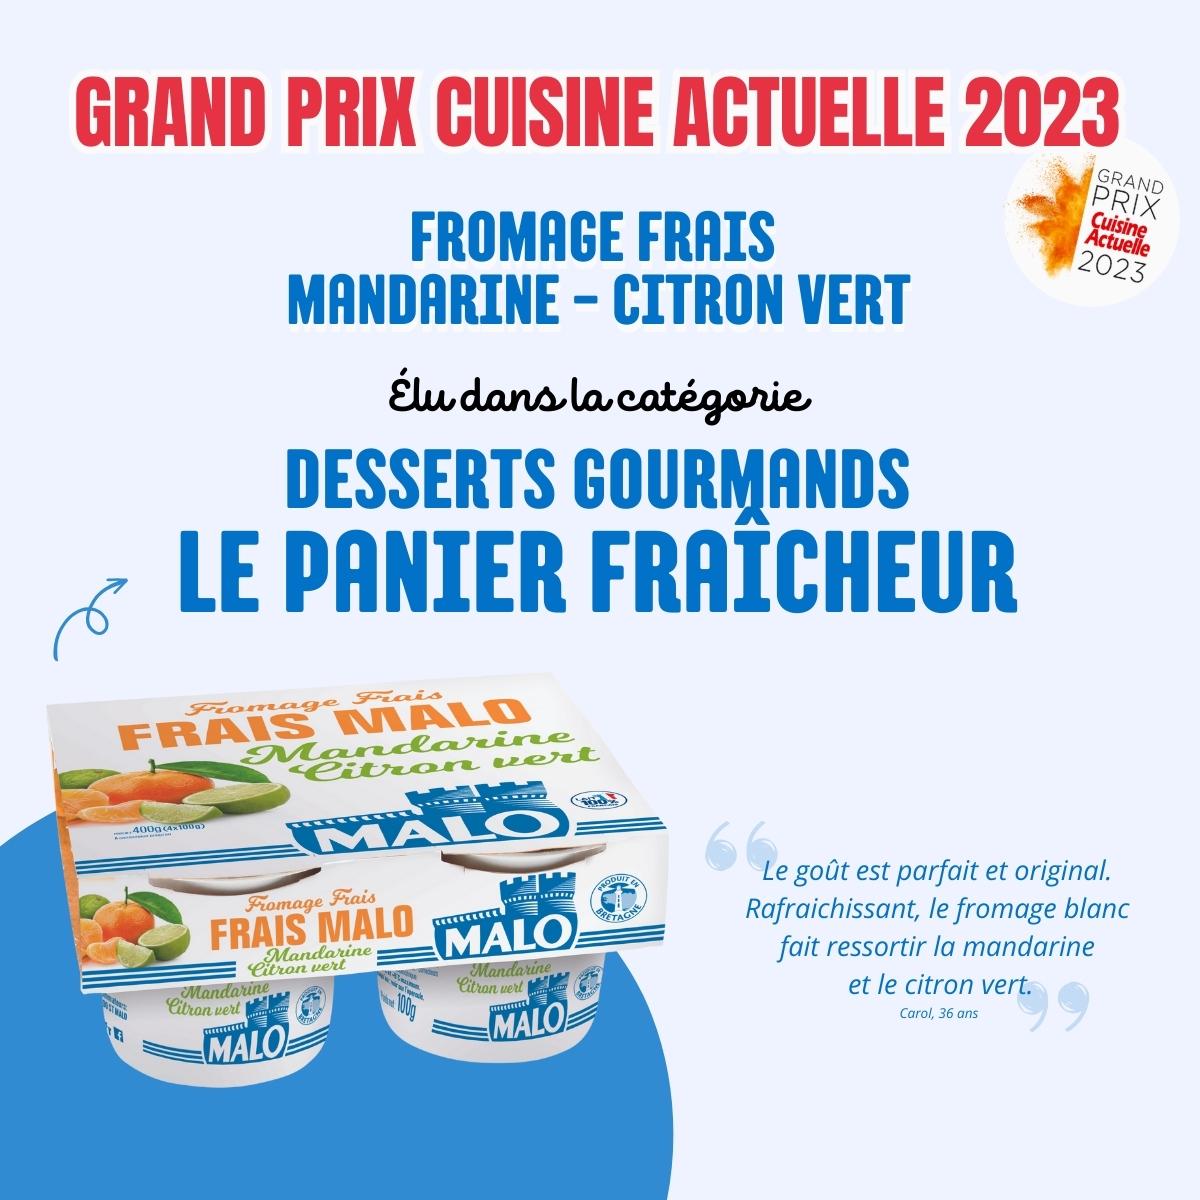 3 marques de SILL Entreprises, Malo, Grandeur Nature et la Compagnie Artique récompensées par le Grand Prix Cuisine Actuelle !